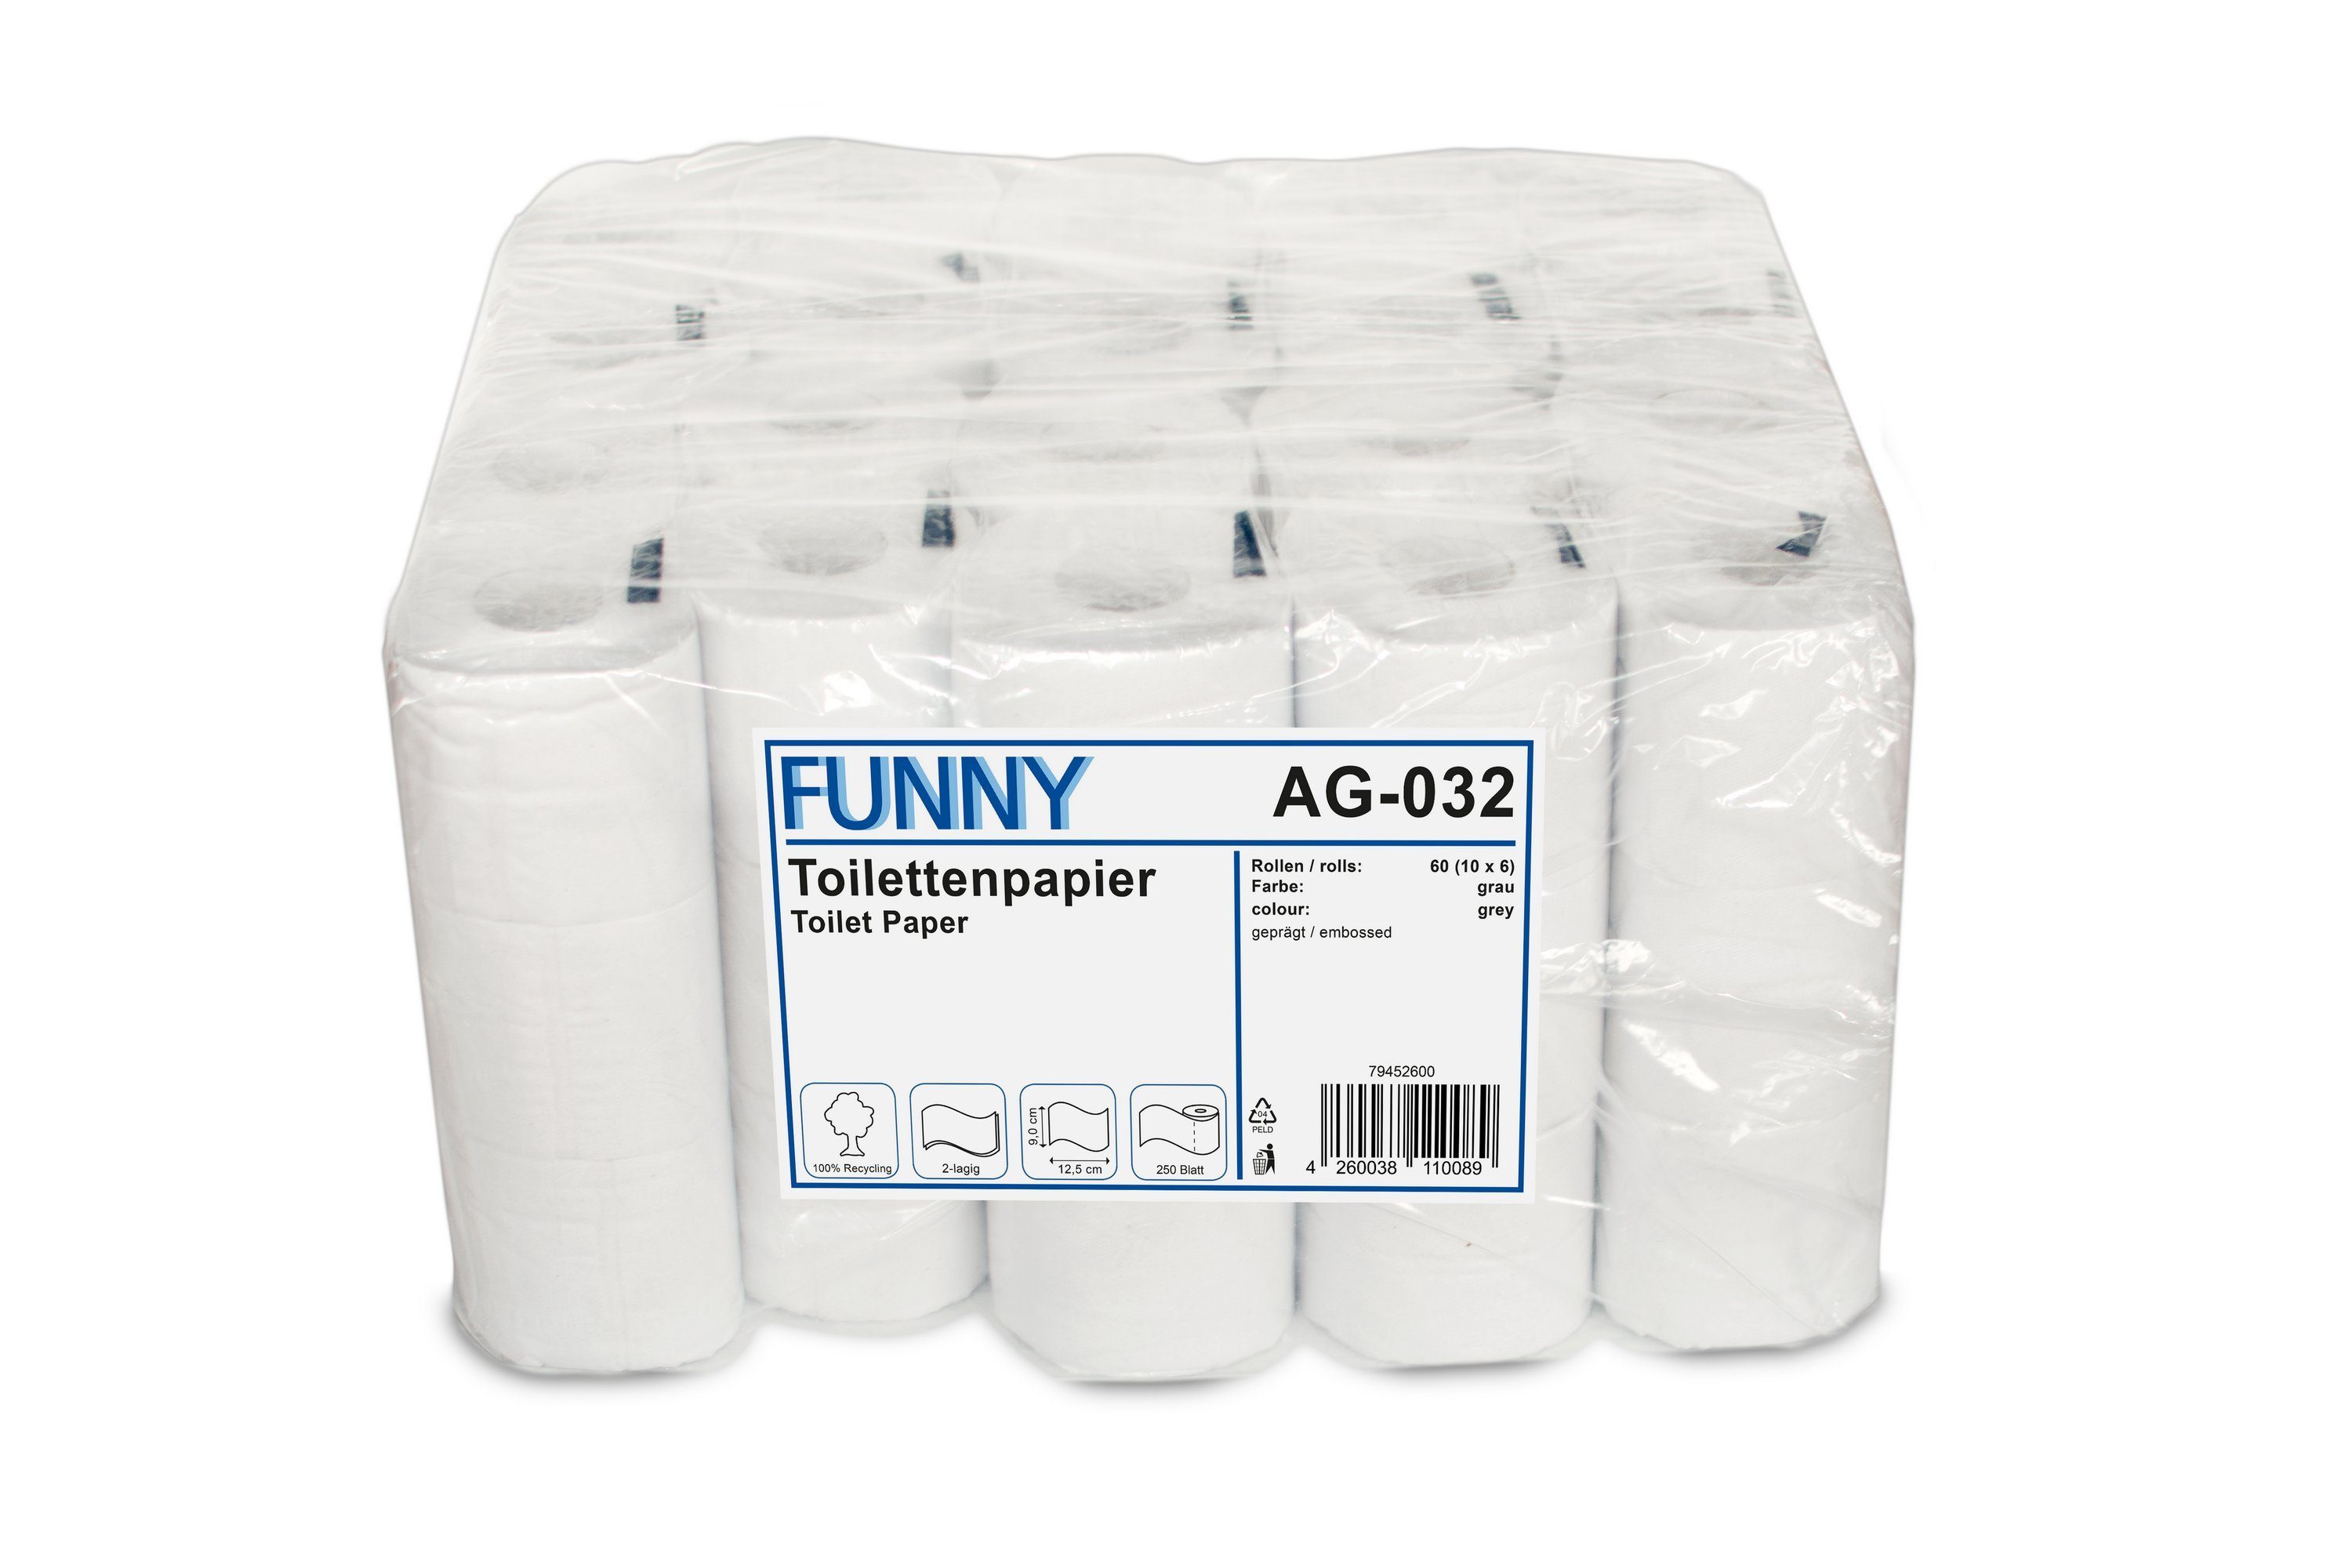 Funny Toilettenpapier 2-lagig, rec. grau, 60 Rollen, 250 Blatt-Rolle